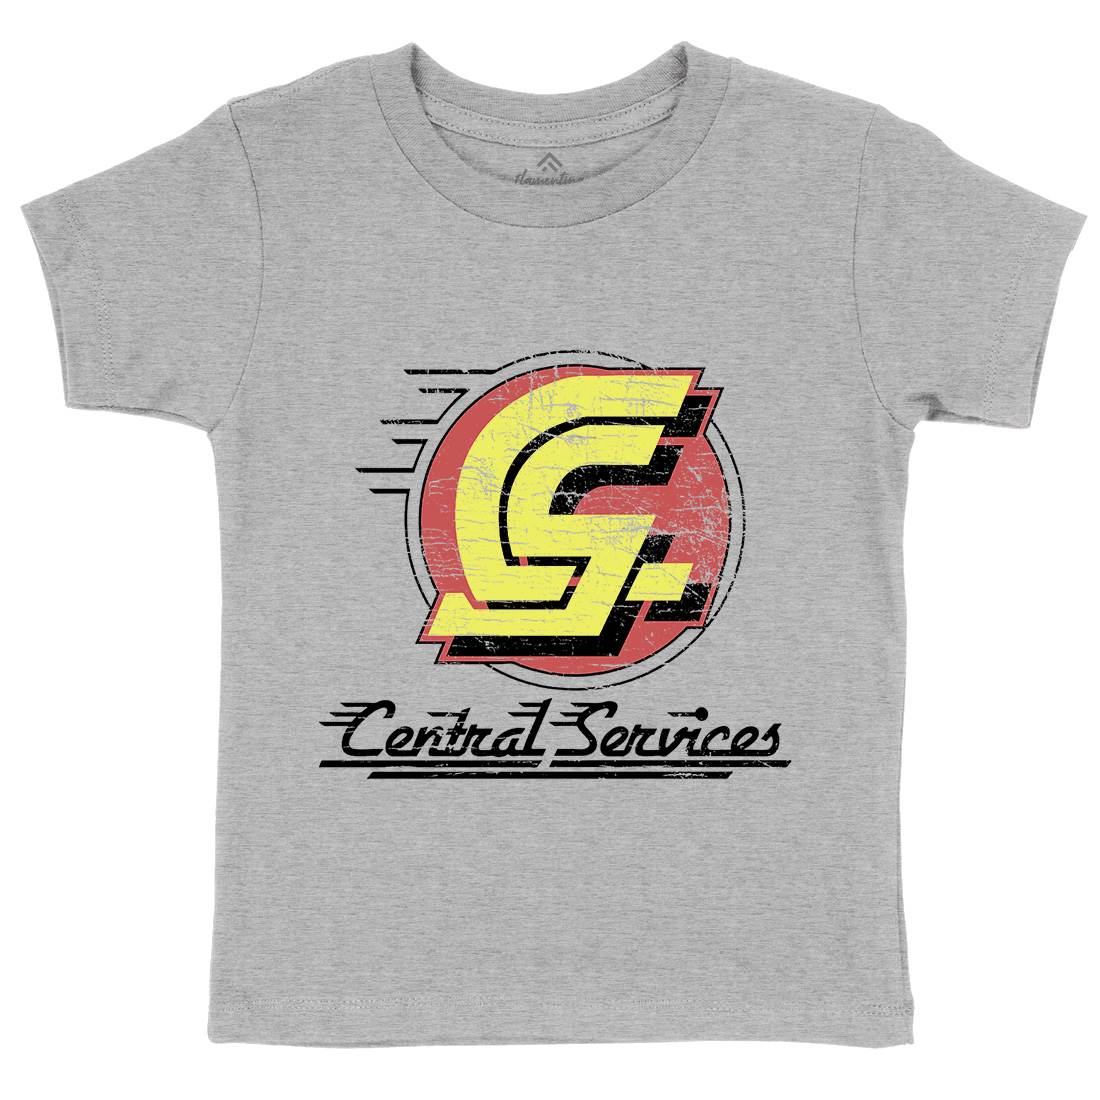 Central Services Kids Crew Neck T-Shirt Space D250